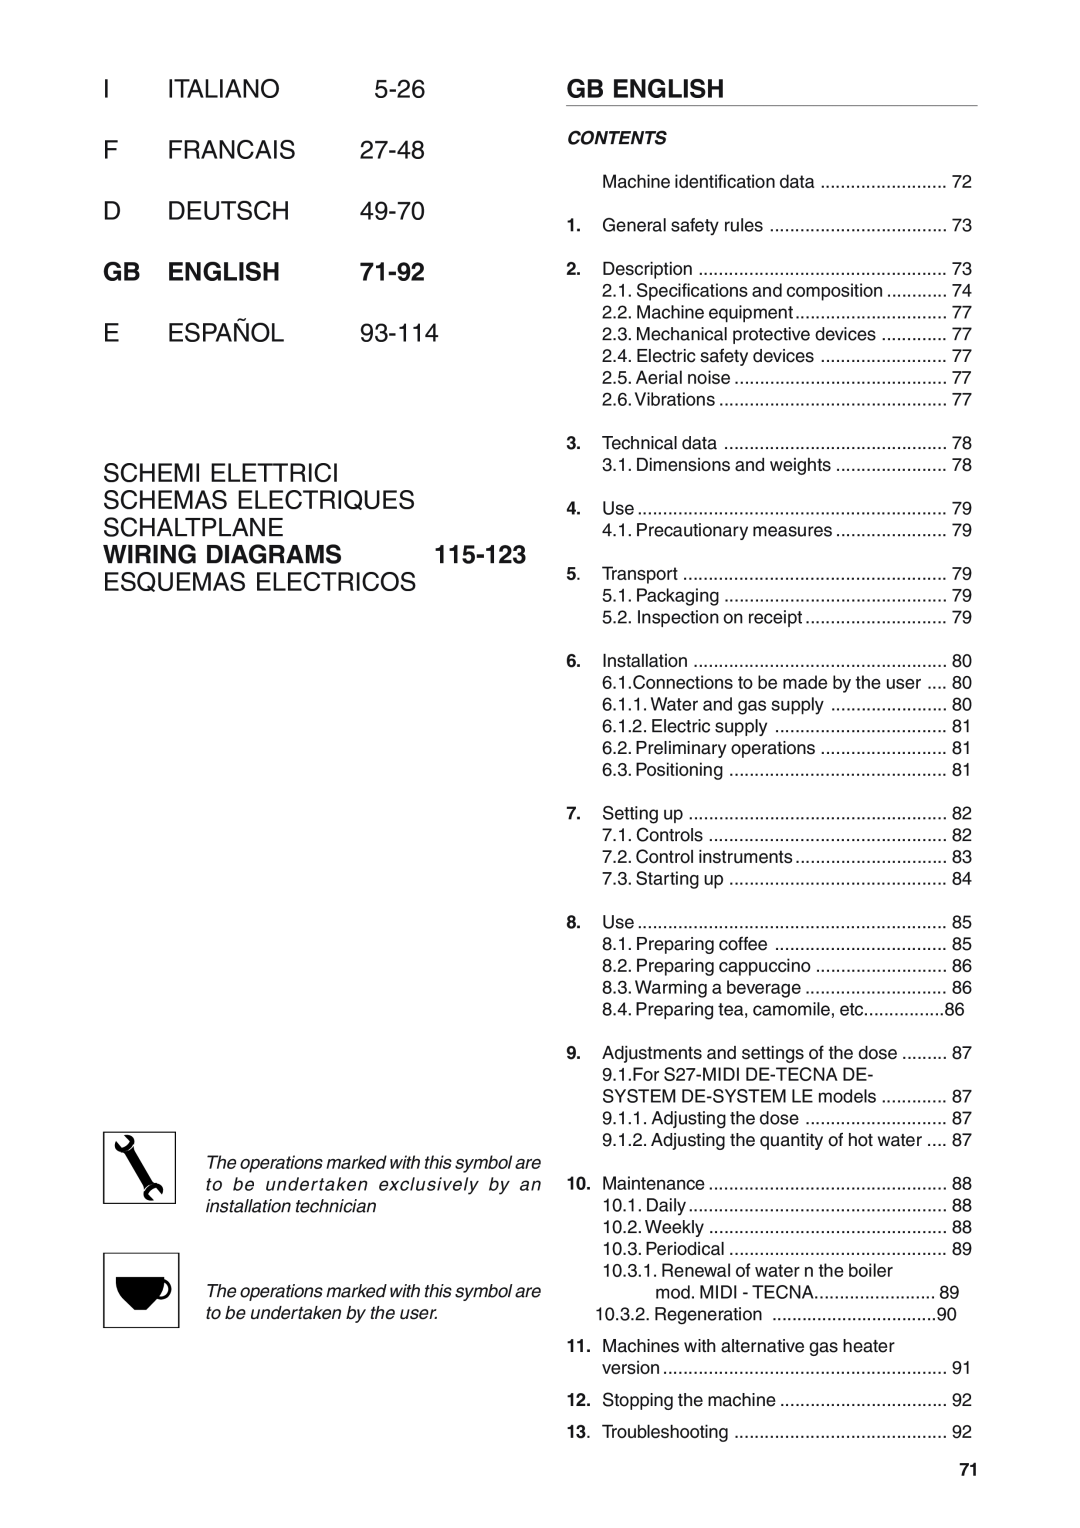 Rancilio S20 Gb English, 71-92, Schemi Elettrici, Schemas Electriques, Schaltplane, Wiring Diagrams, Contents, Italiano 